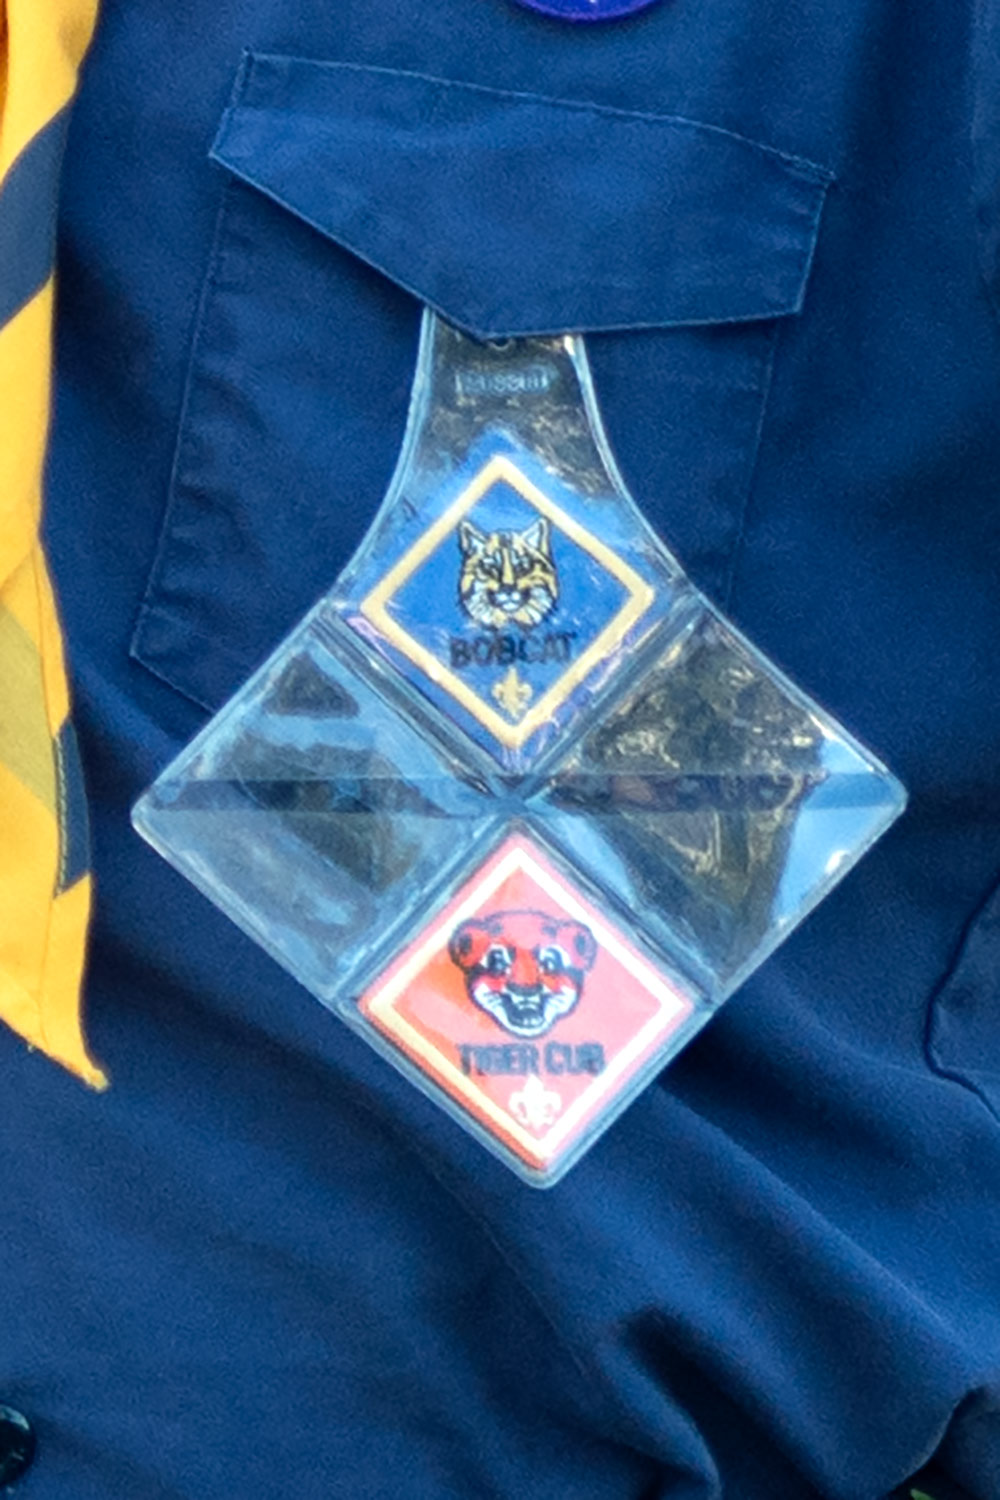 $15 Badge Reel Grab Bag